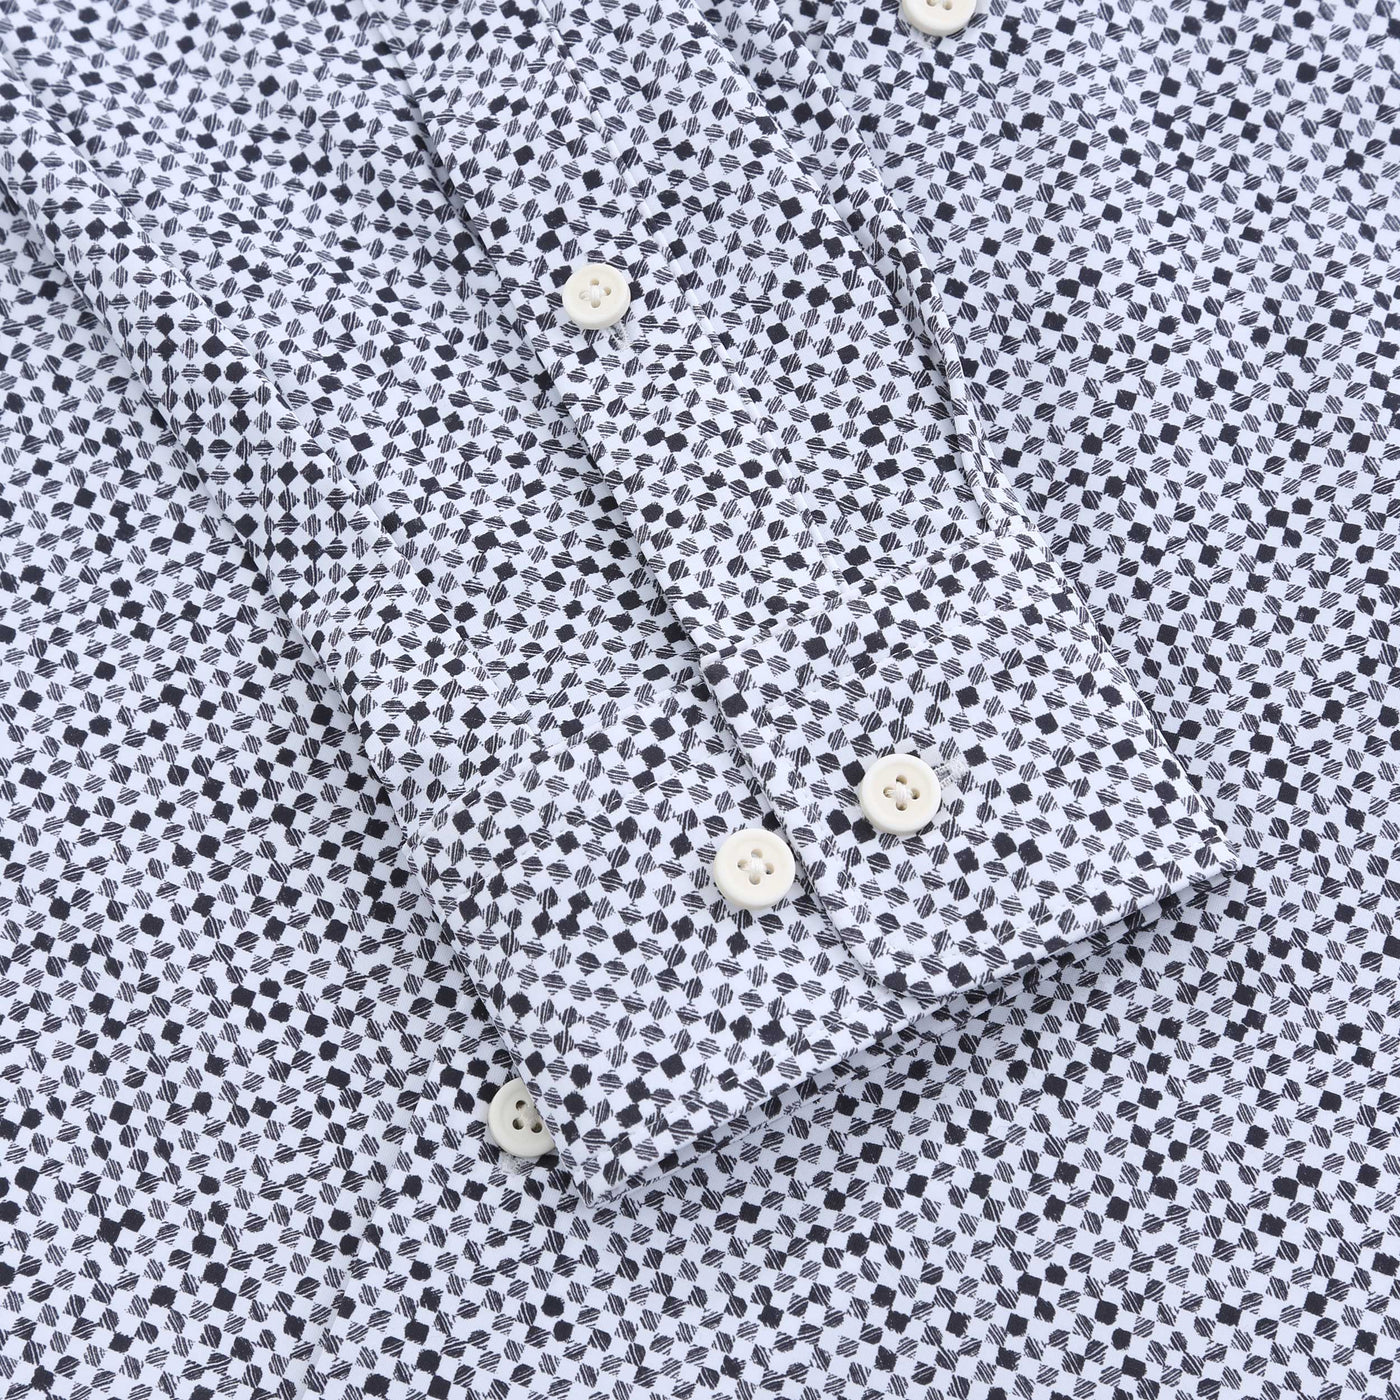 BOSS P Roan Kent C1 233 Shirt in Medium Grey Cuff